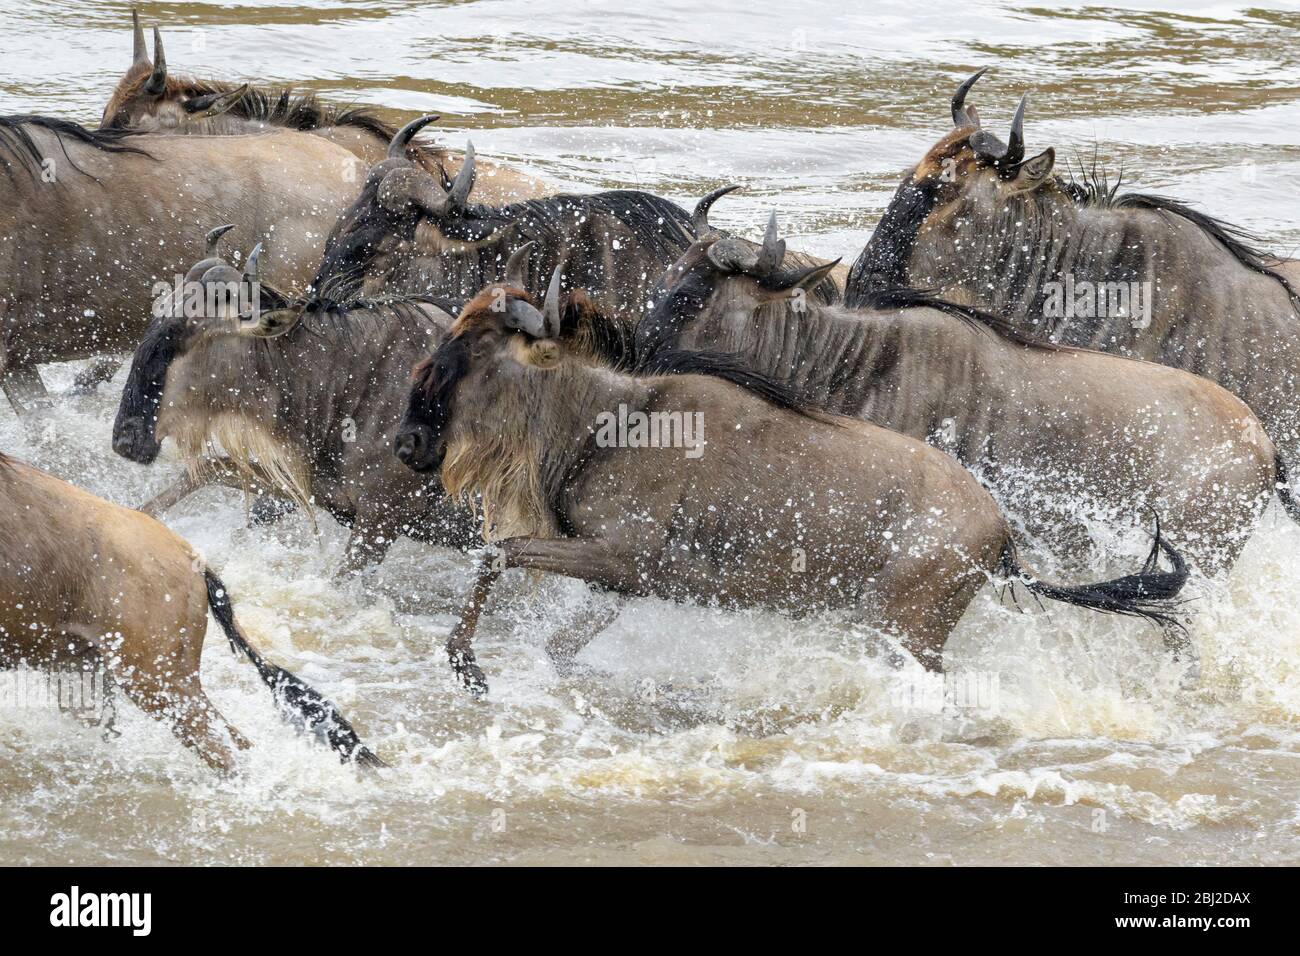 Bleu wildebeest, brindled gnu (Connochaetes taurinus) traversant la rivière Mara pendant la grande migration, Parc national Serengeti, Tanzanie. Banque D'Images